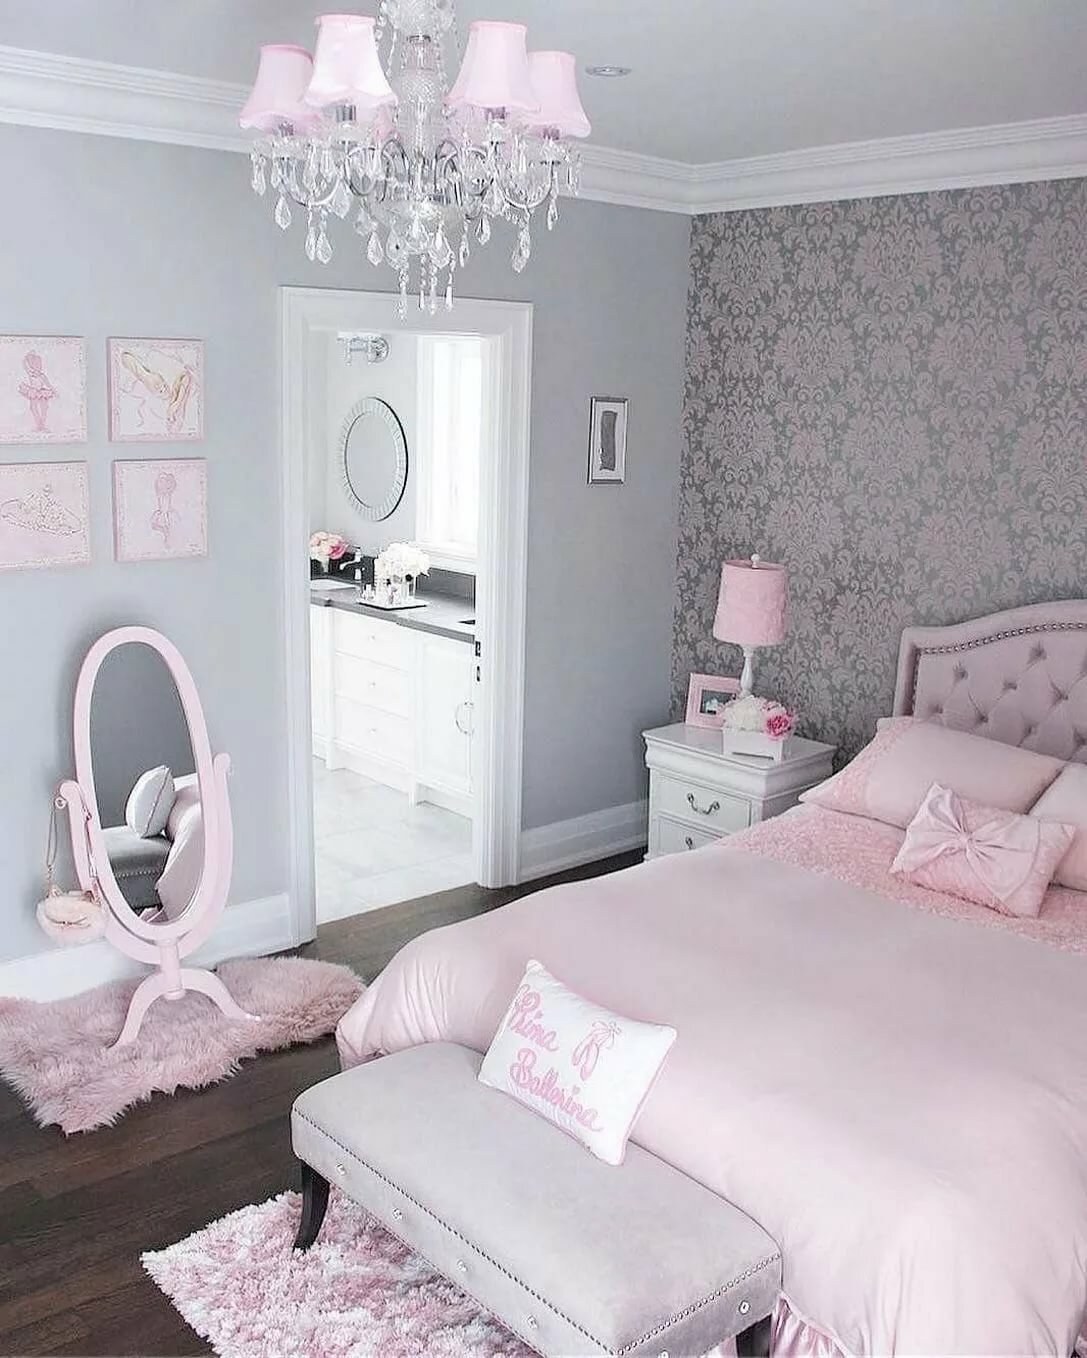 Комната в розовых тонах. Светлая комната для девочки. Комната для девочки розового цвета. Спальня для девочки в розовых тонах. Интерьер комнаты для девушки.